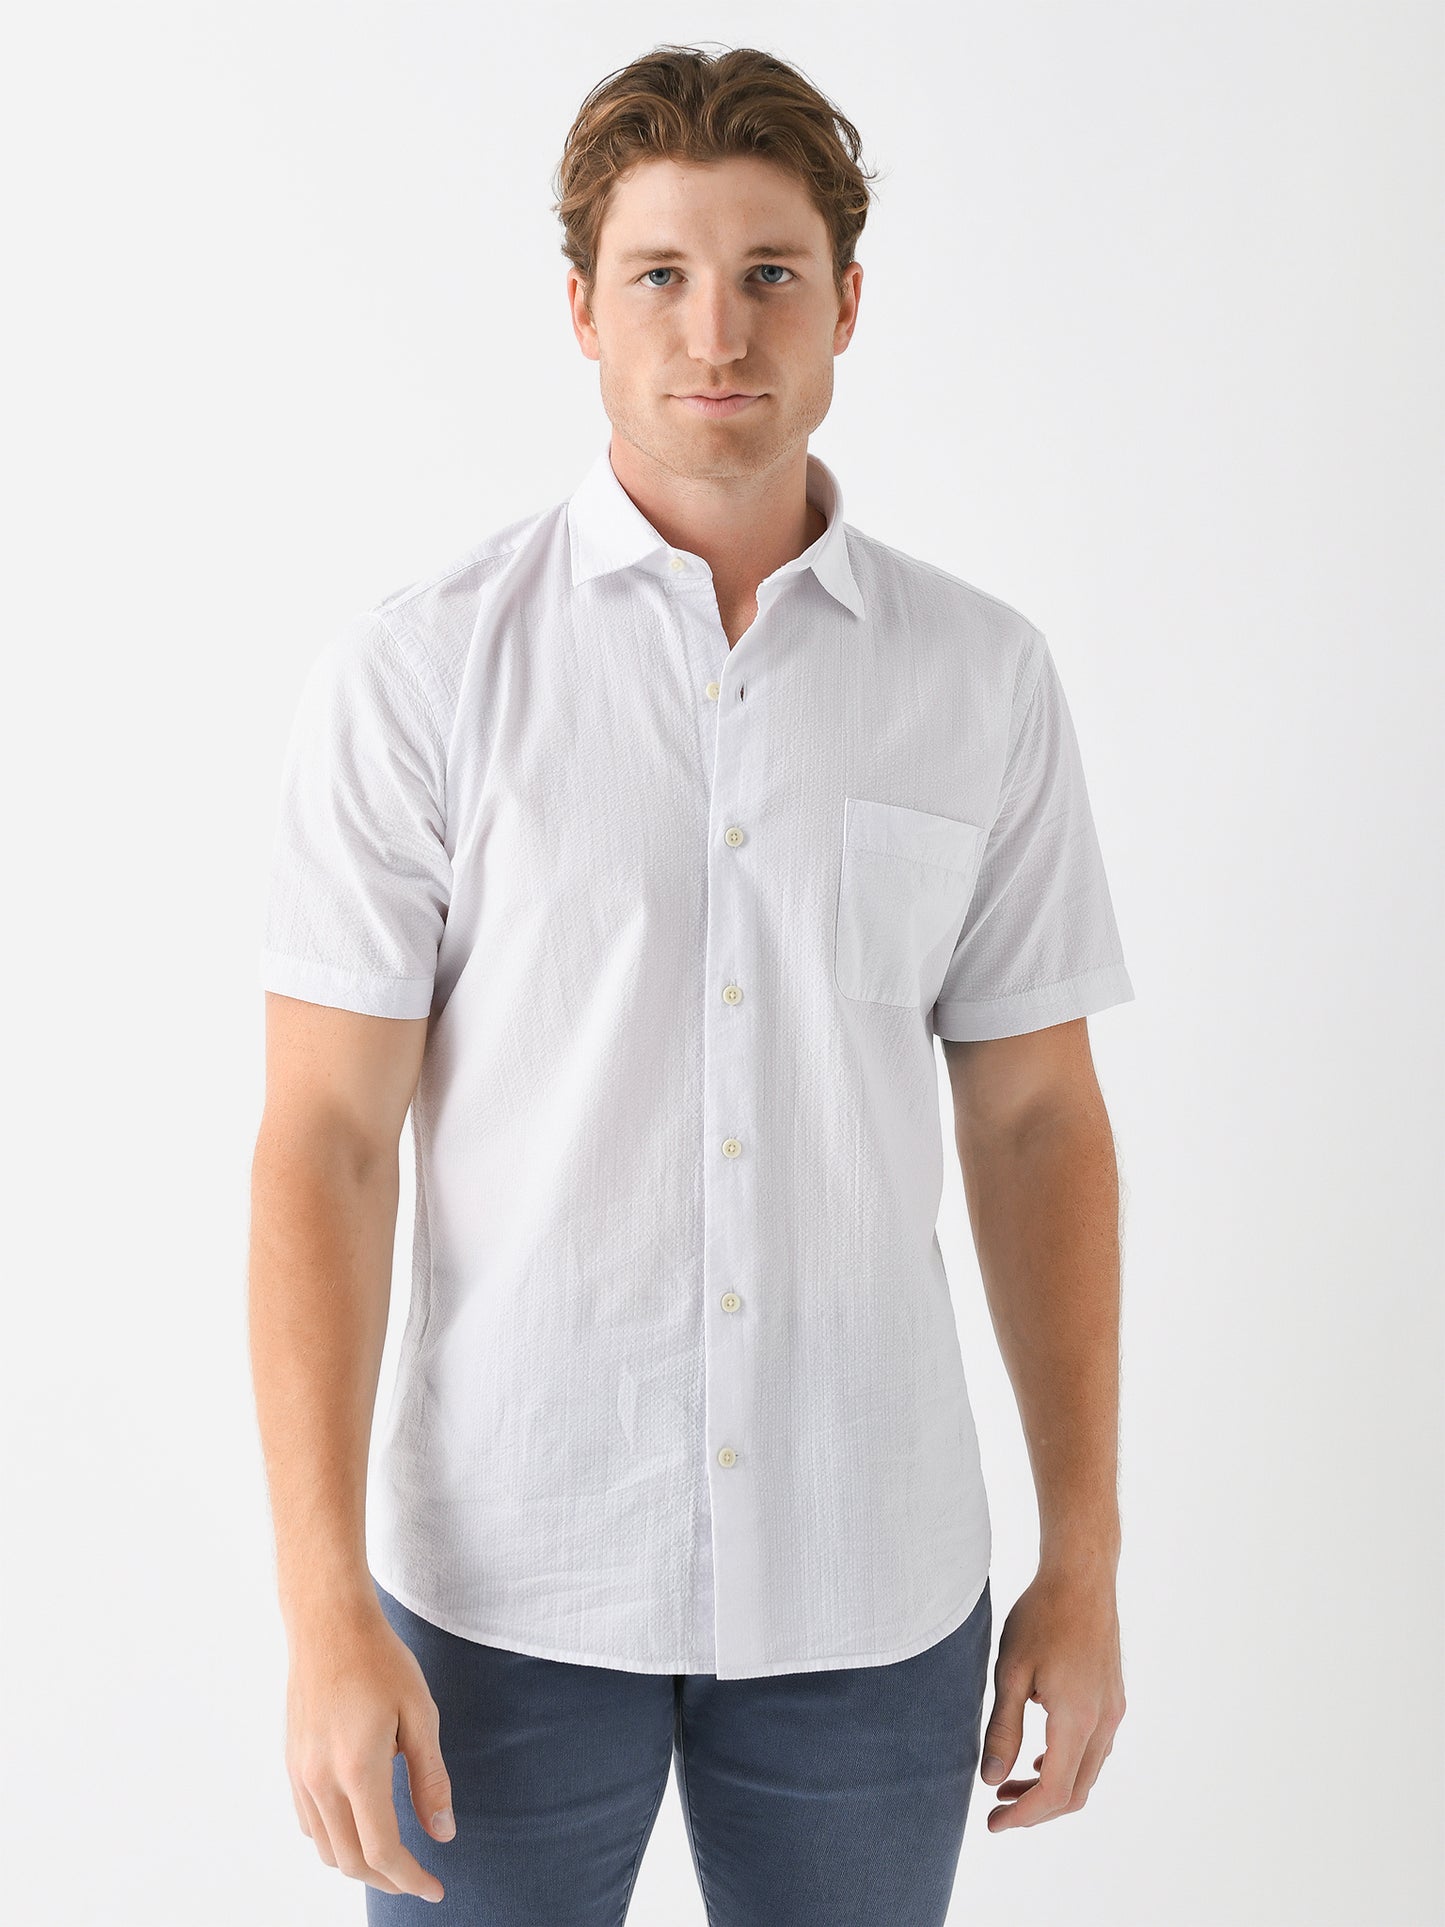 Peter Millar Crown Men's Seaward Seersucker Cotton Sport Shirt